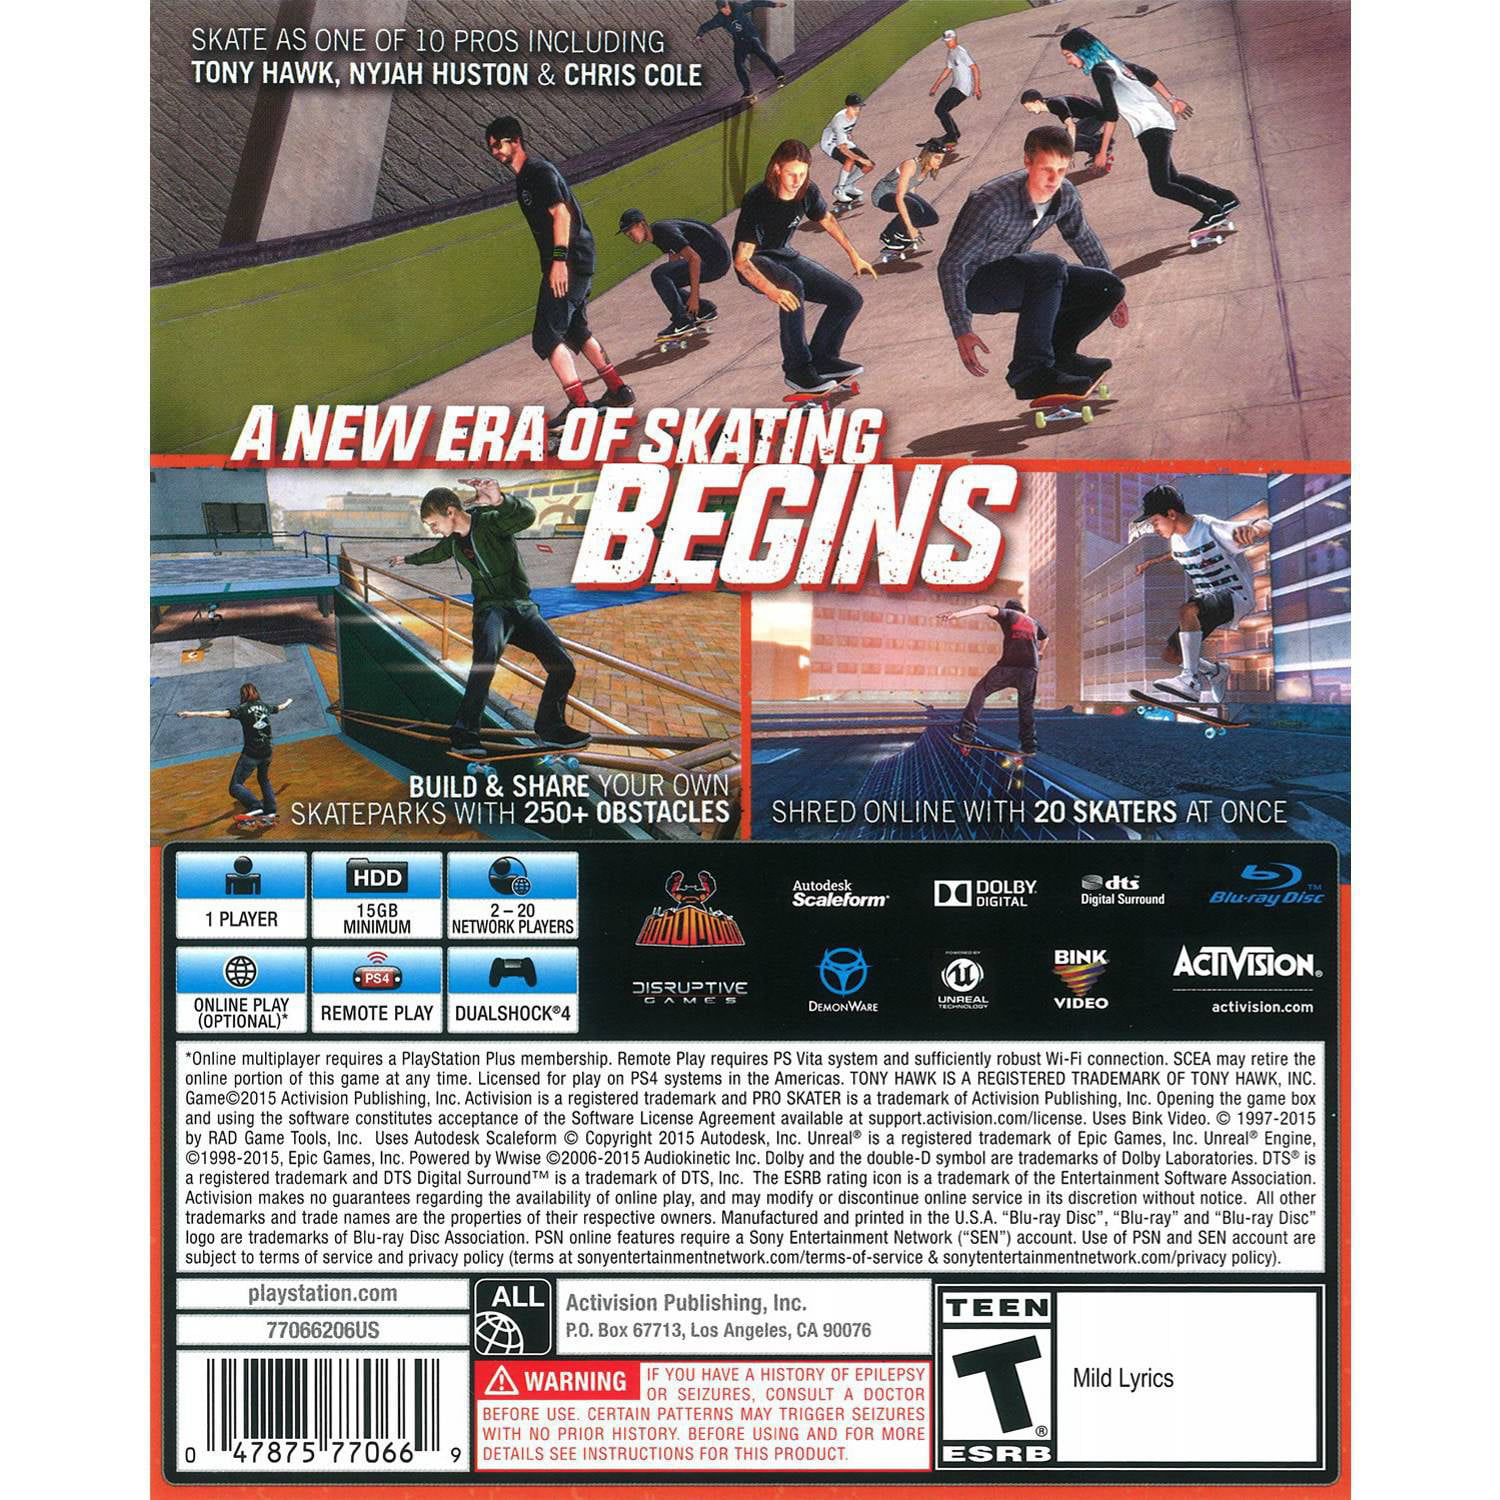 Tony Hawk's Pro Skater 5 - PlayStation 4